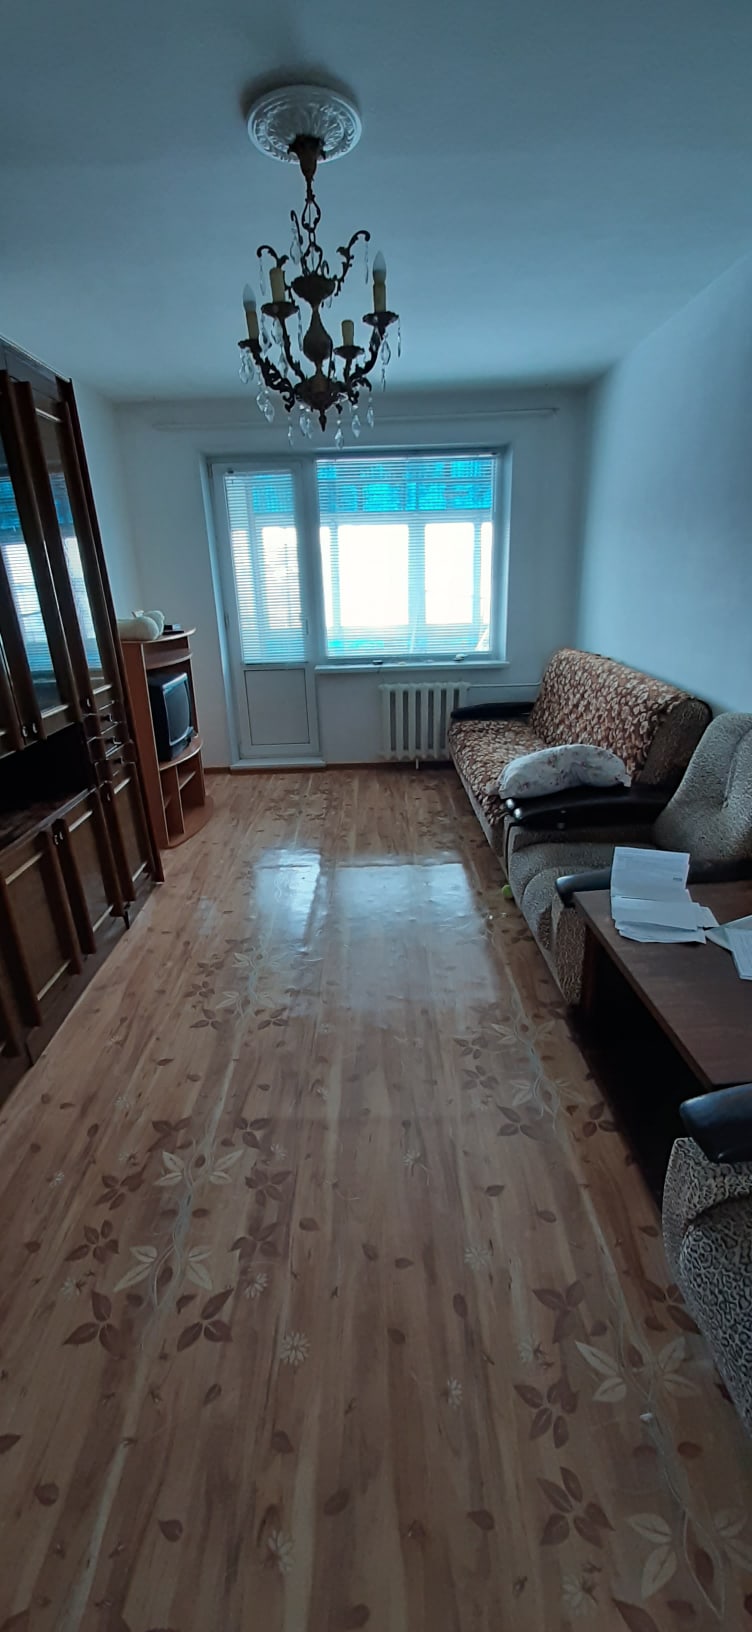 Сдам 2-х комнатную квартиру по улице | Объявления Орска и Новотроицка №4599